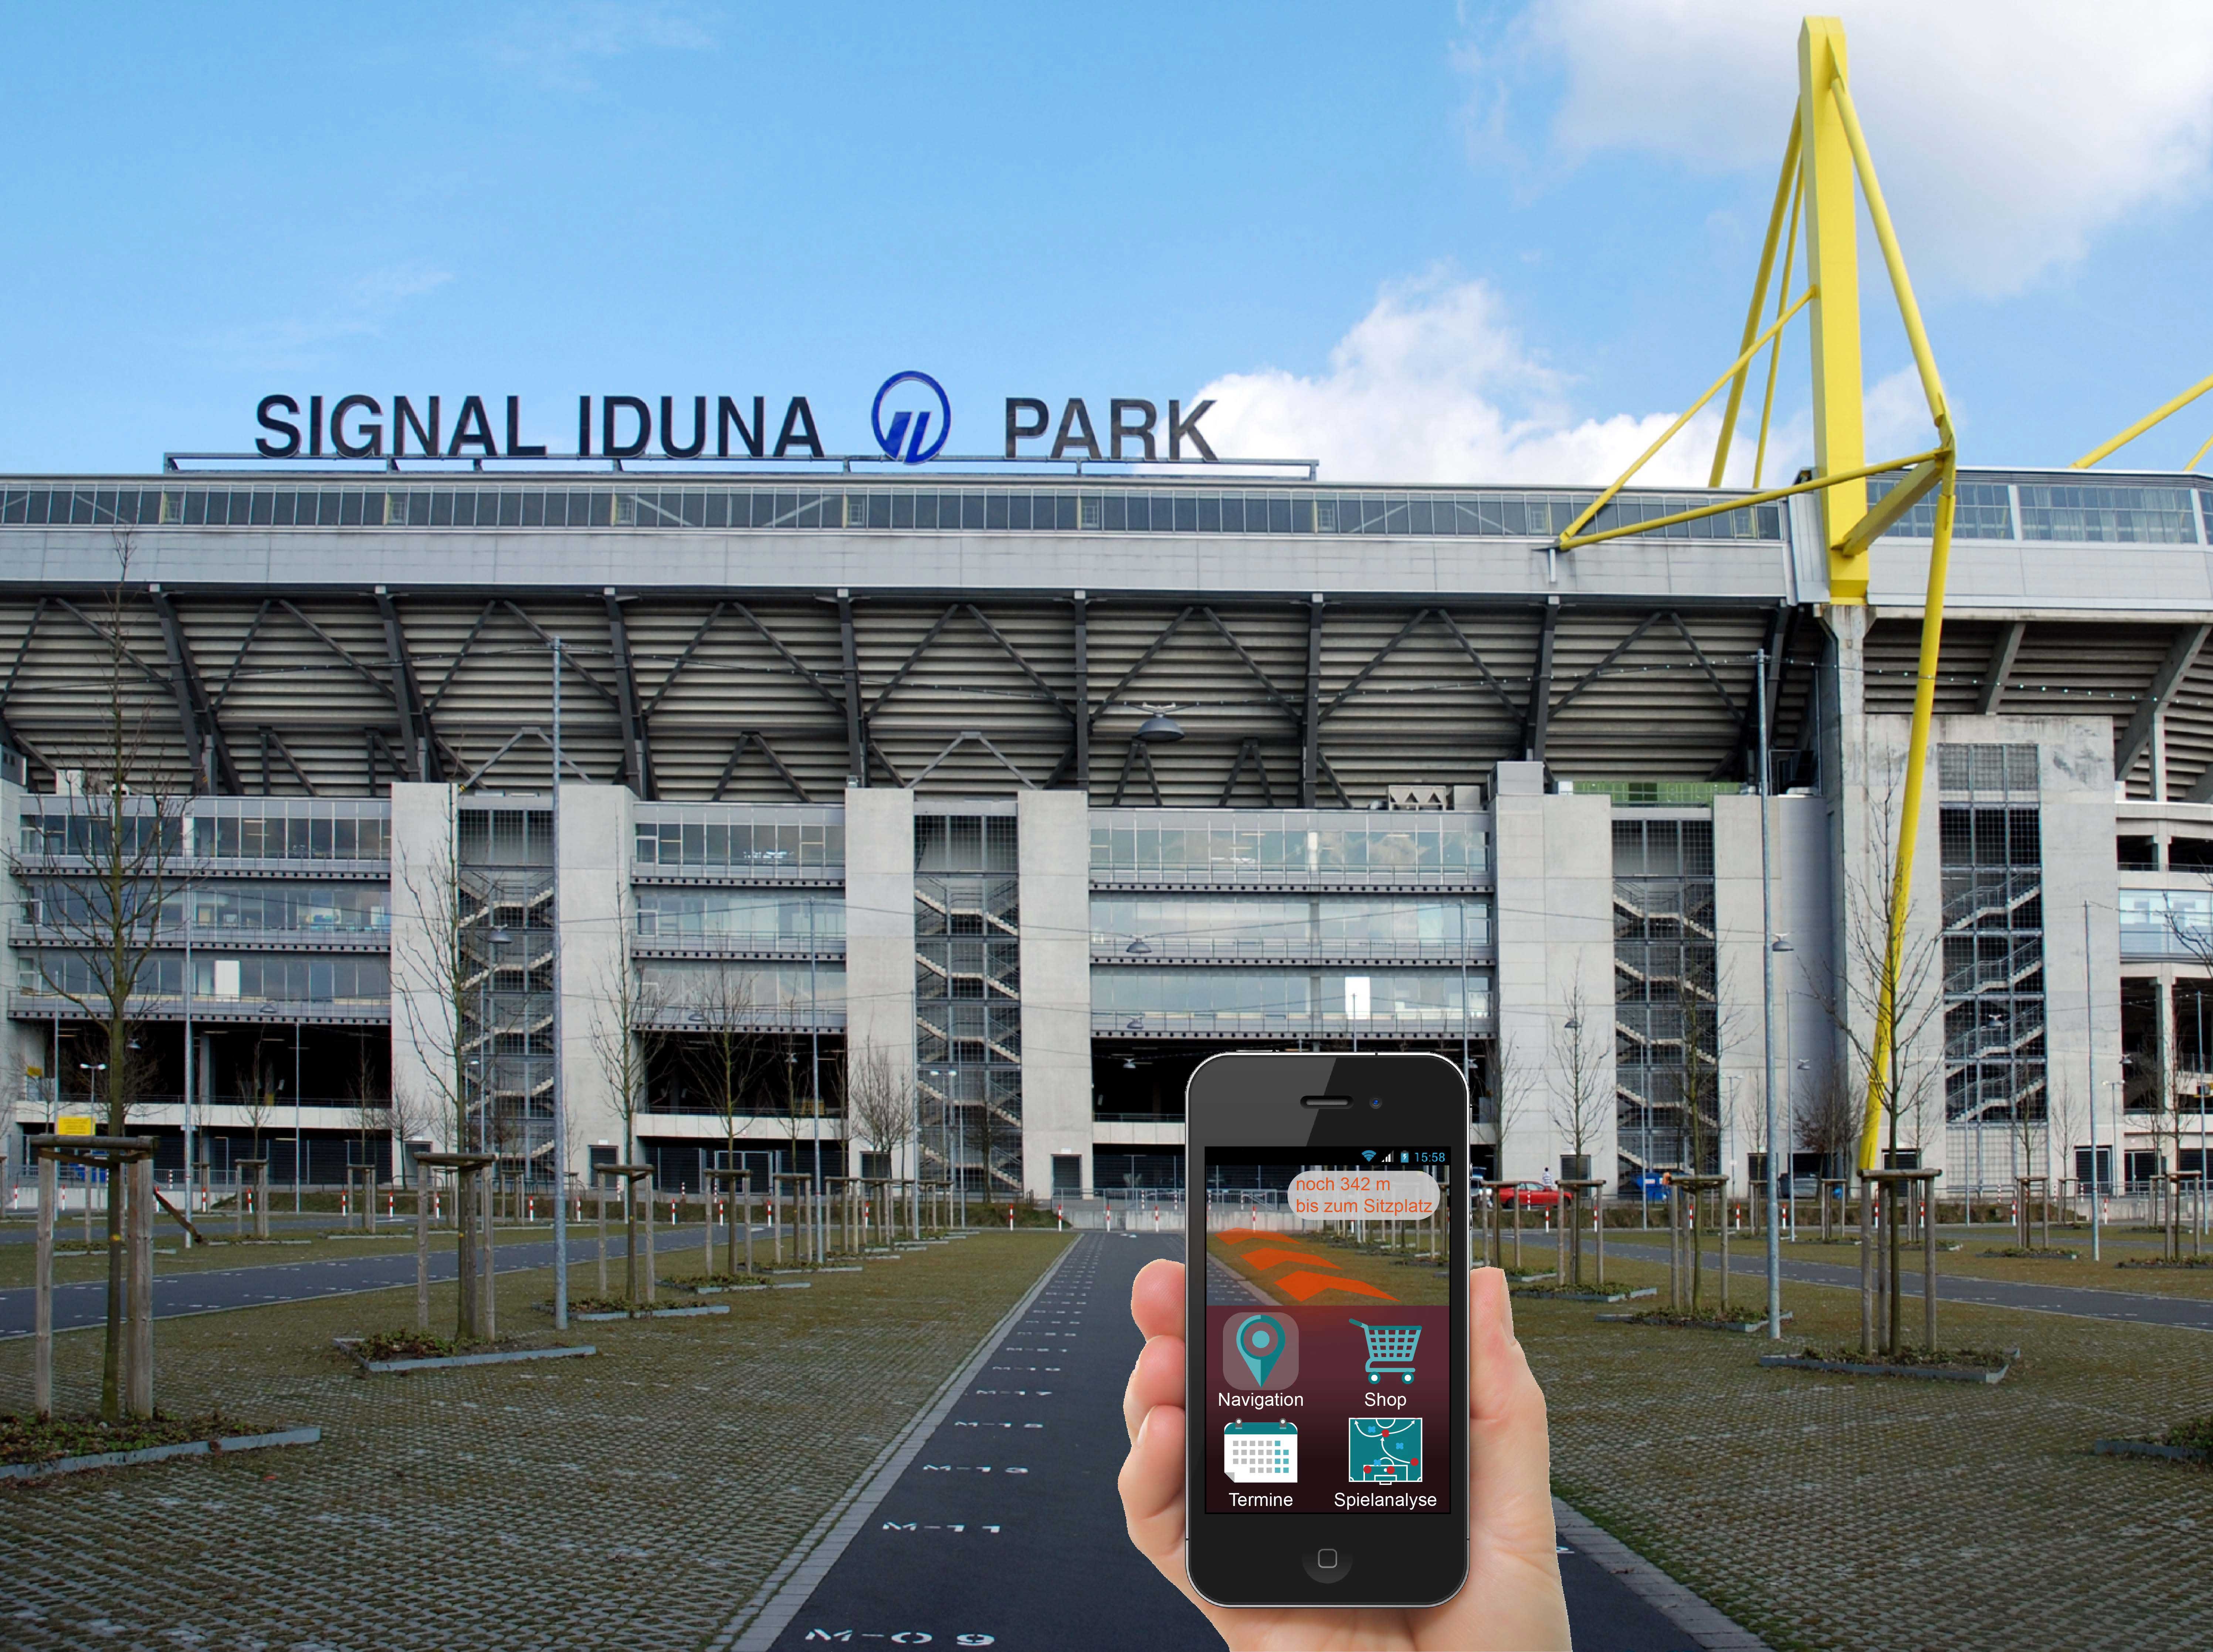 Virtuelle Navigation zum Sitzplatz im realen Stadion – Augmented Reality macht es möglich